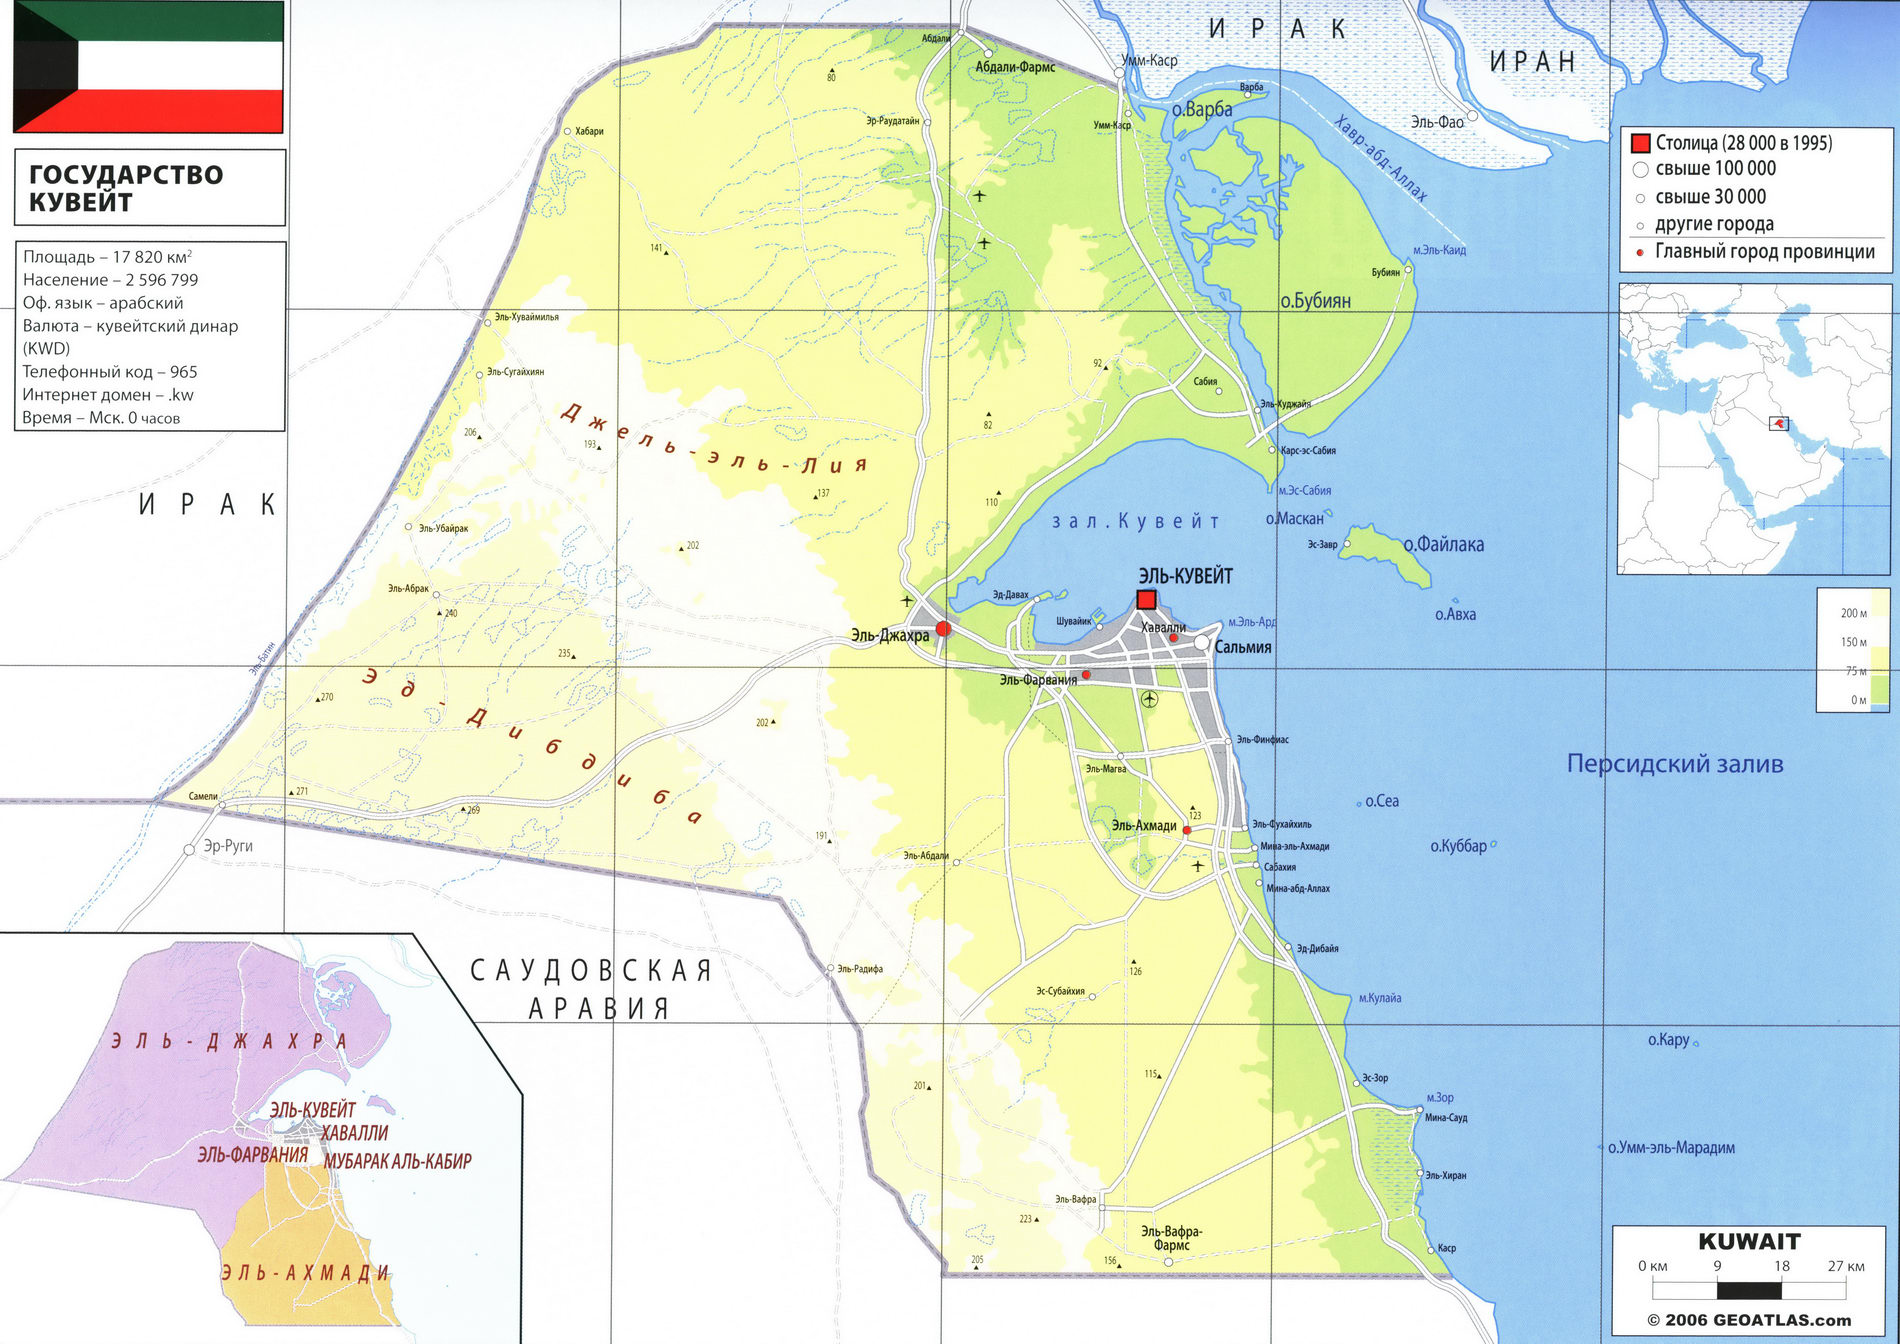 Кувейт карта на русском языке, описание страны, география - Атлас мира